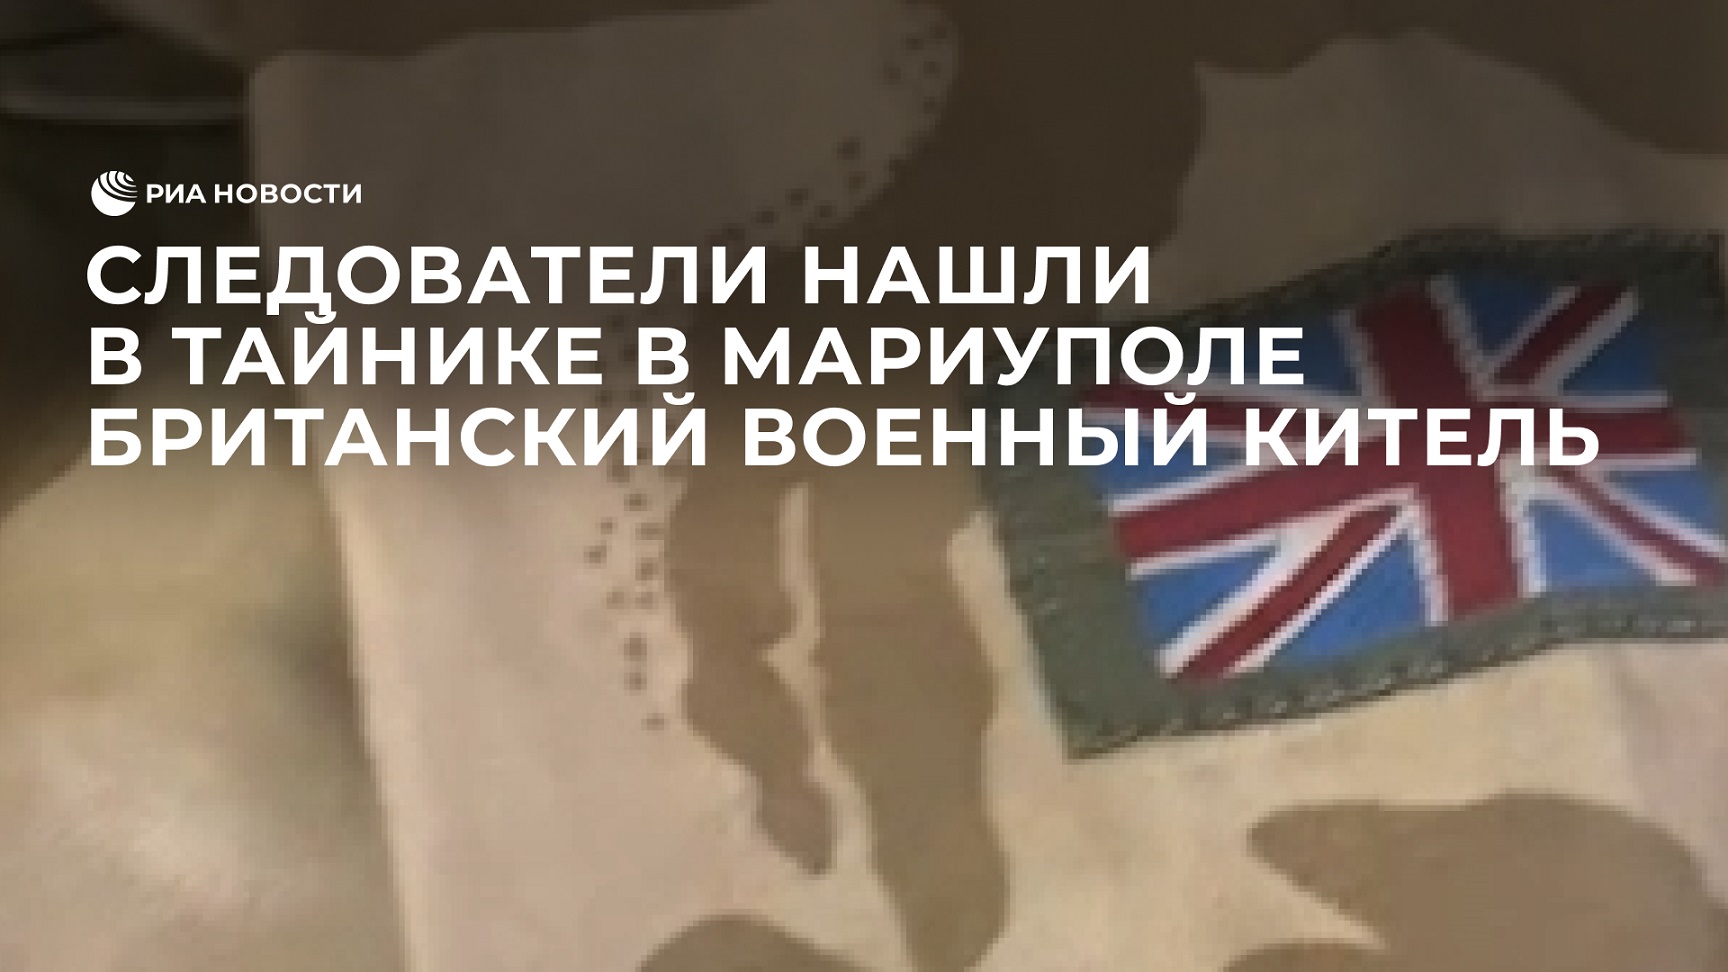 Следователи СК России нашли в тайнике в Мариуполе британский военный китель